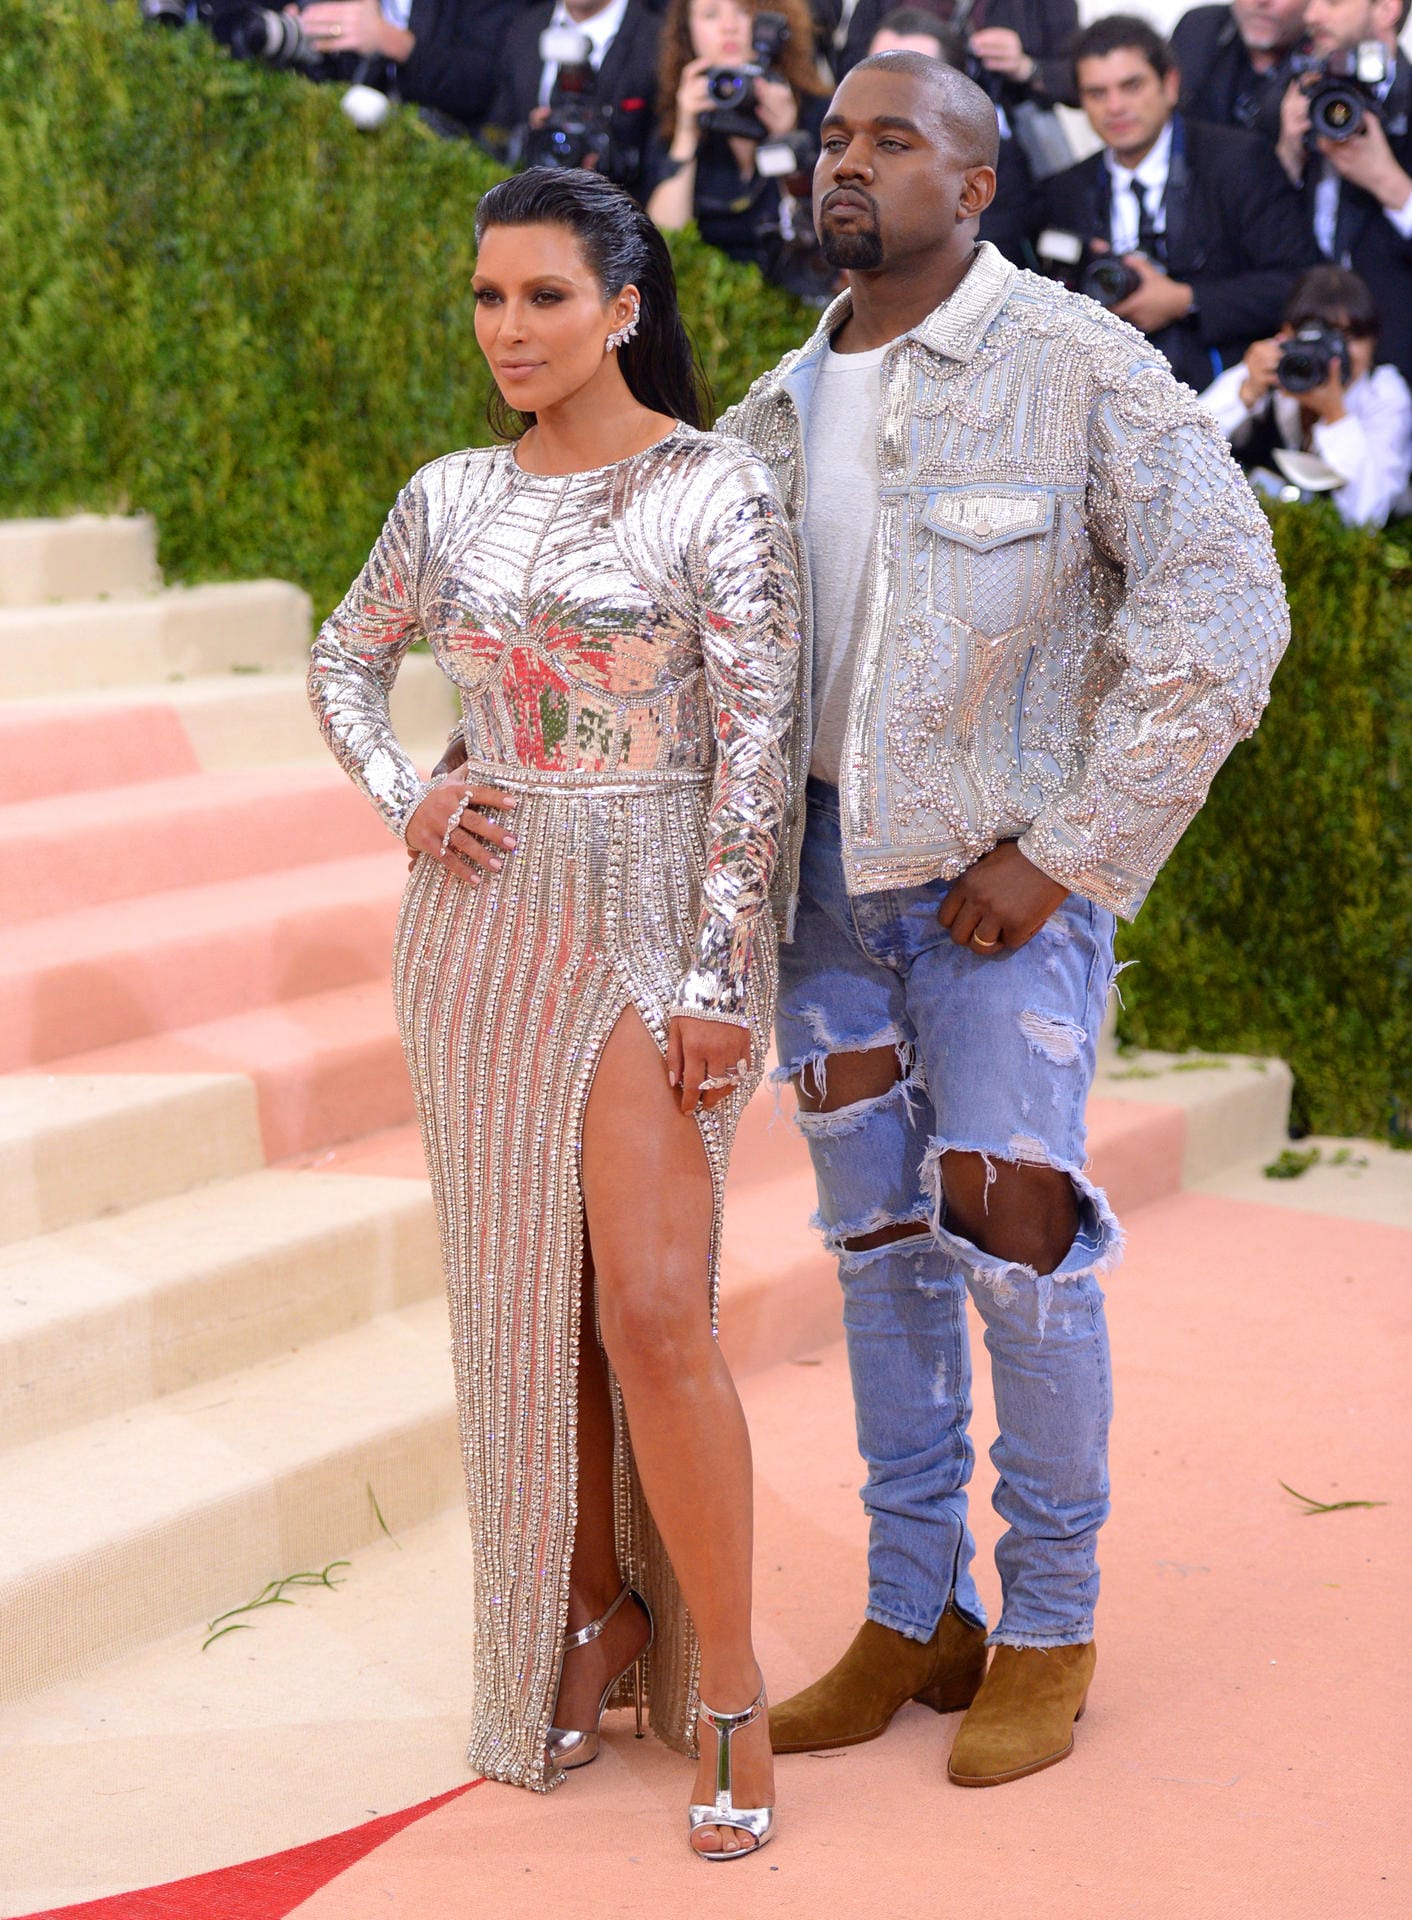 Immerhin hatte Kim sich mit ihrer futuristischen silbernen Balmain-Robe am Motto der Party orientiert. Was man vom - sagen wir mal - leger gekleideten Kanye nicht behaupten kann.